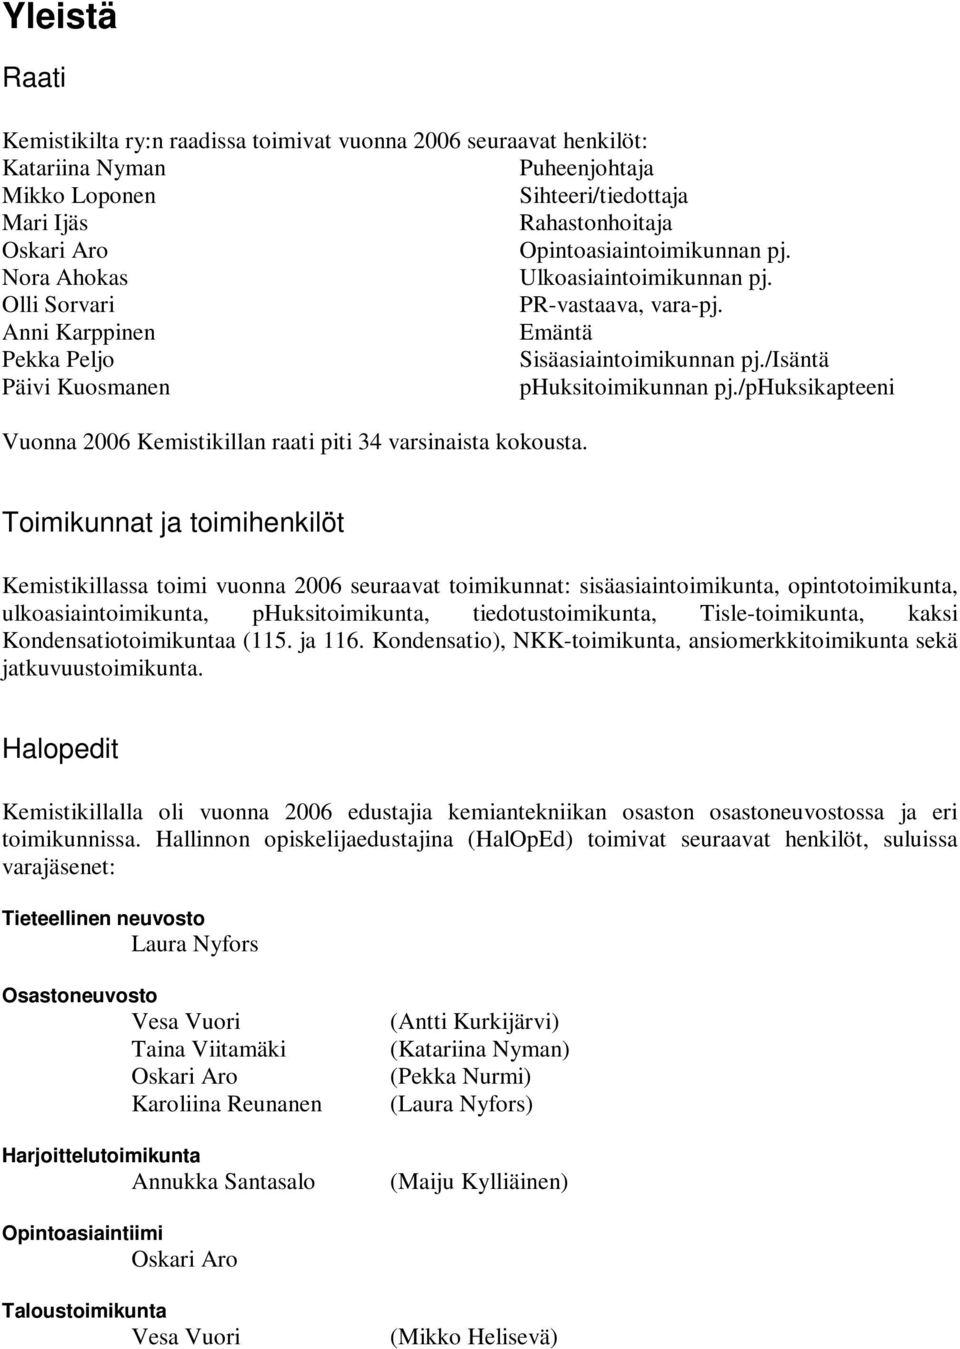 /isäntä Päivi Kuosmanen phuksitoimikunnan pj./phuksikapteeni Vuonna 2006 Kemistikillan raati piti 34 varsinaista kokousta.